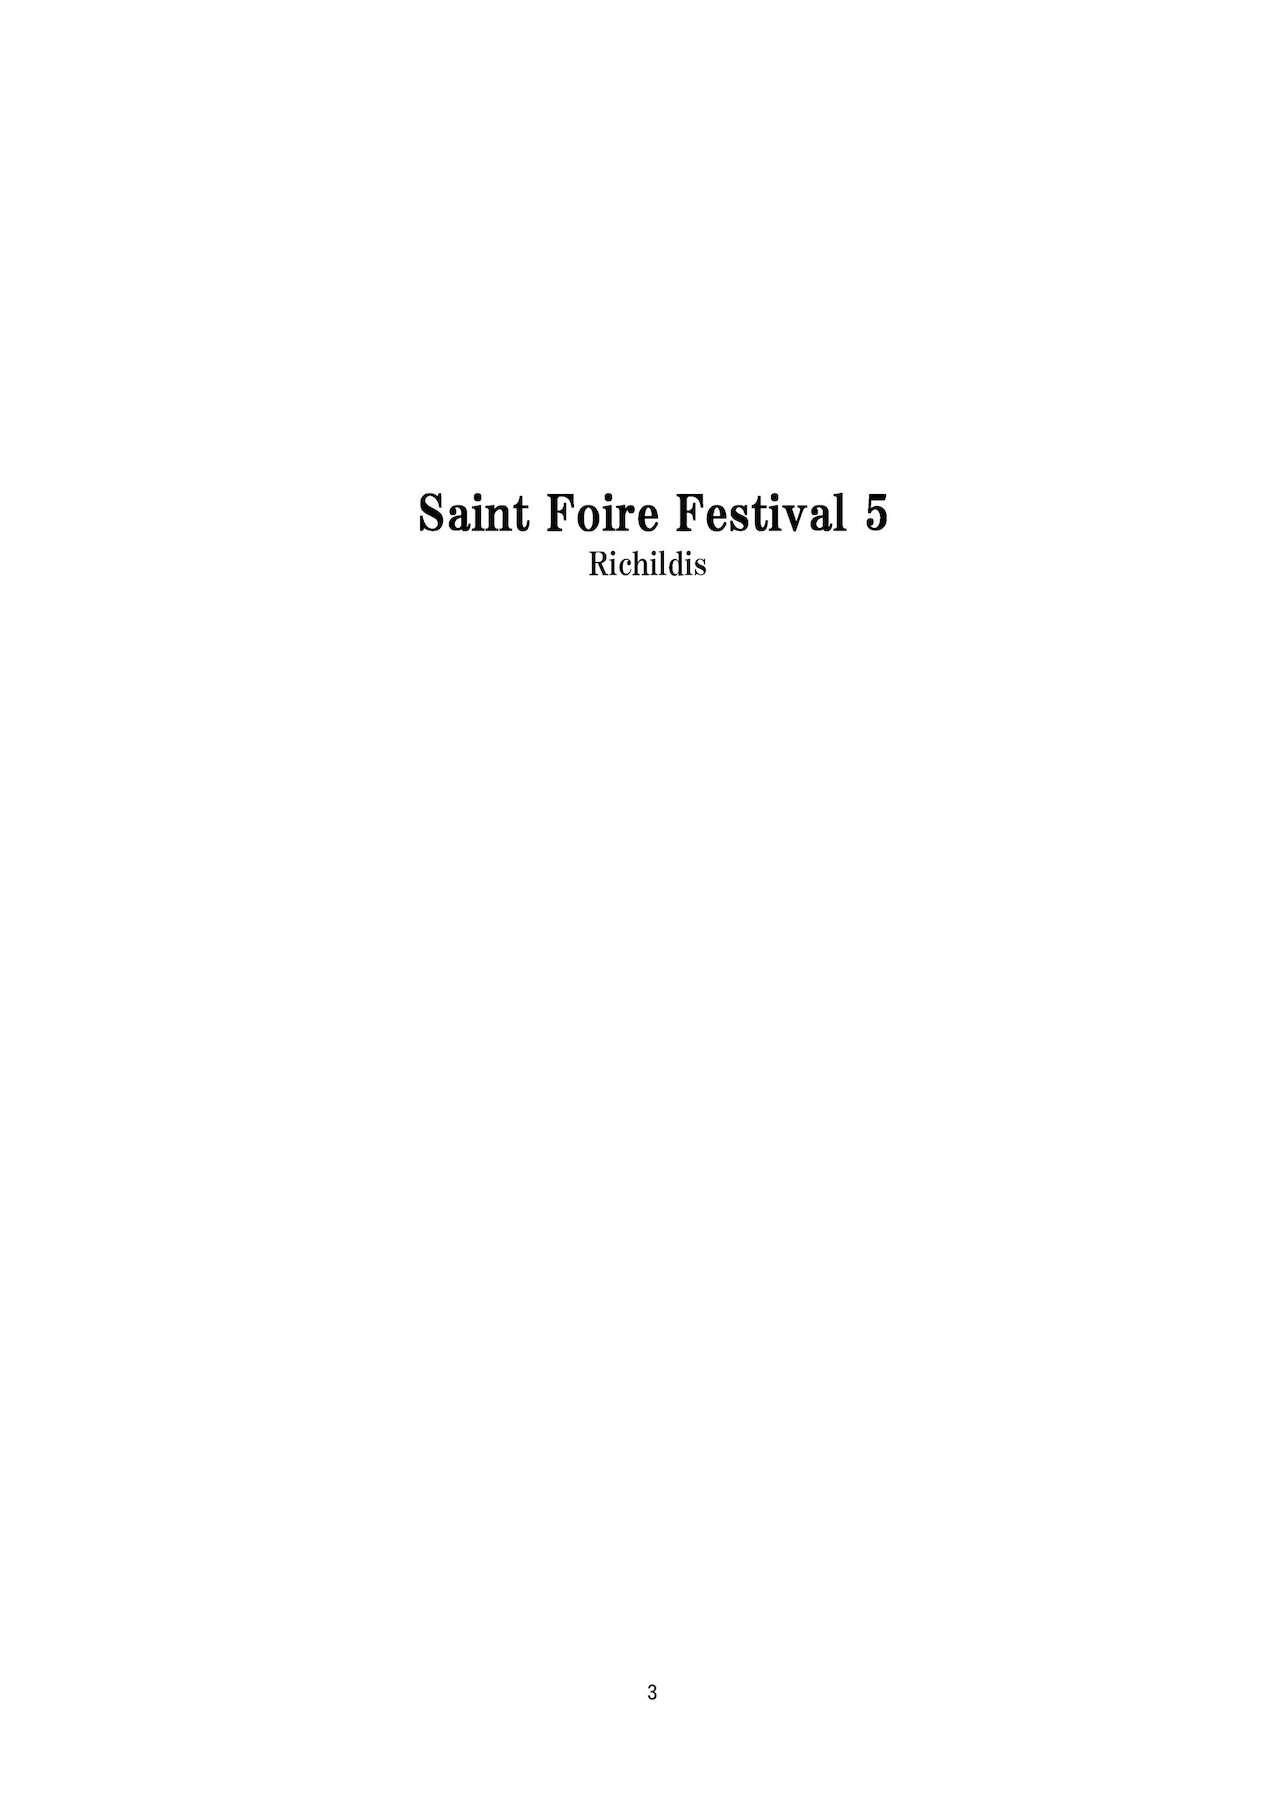 Saint Foire Festival 5 Richildis 2